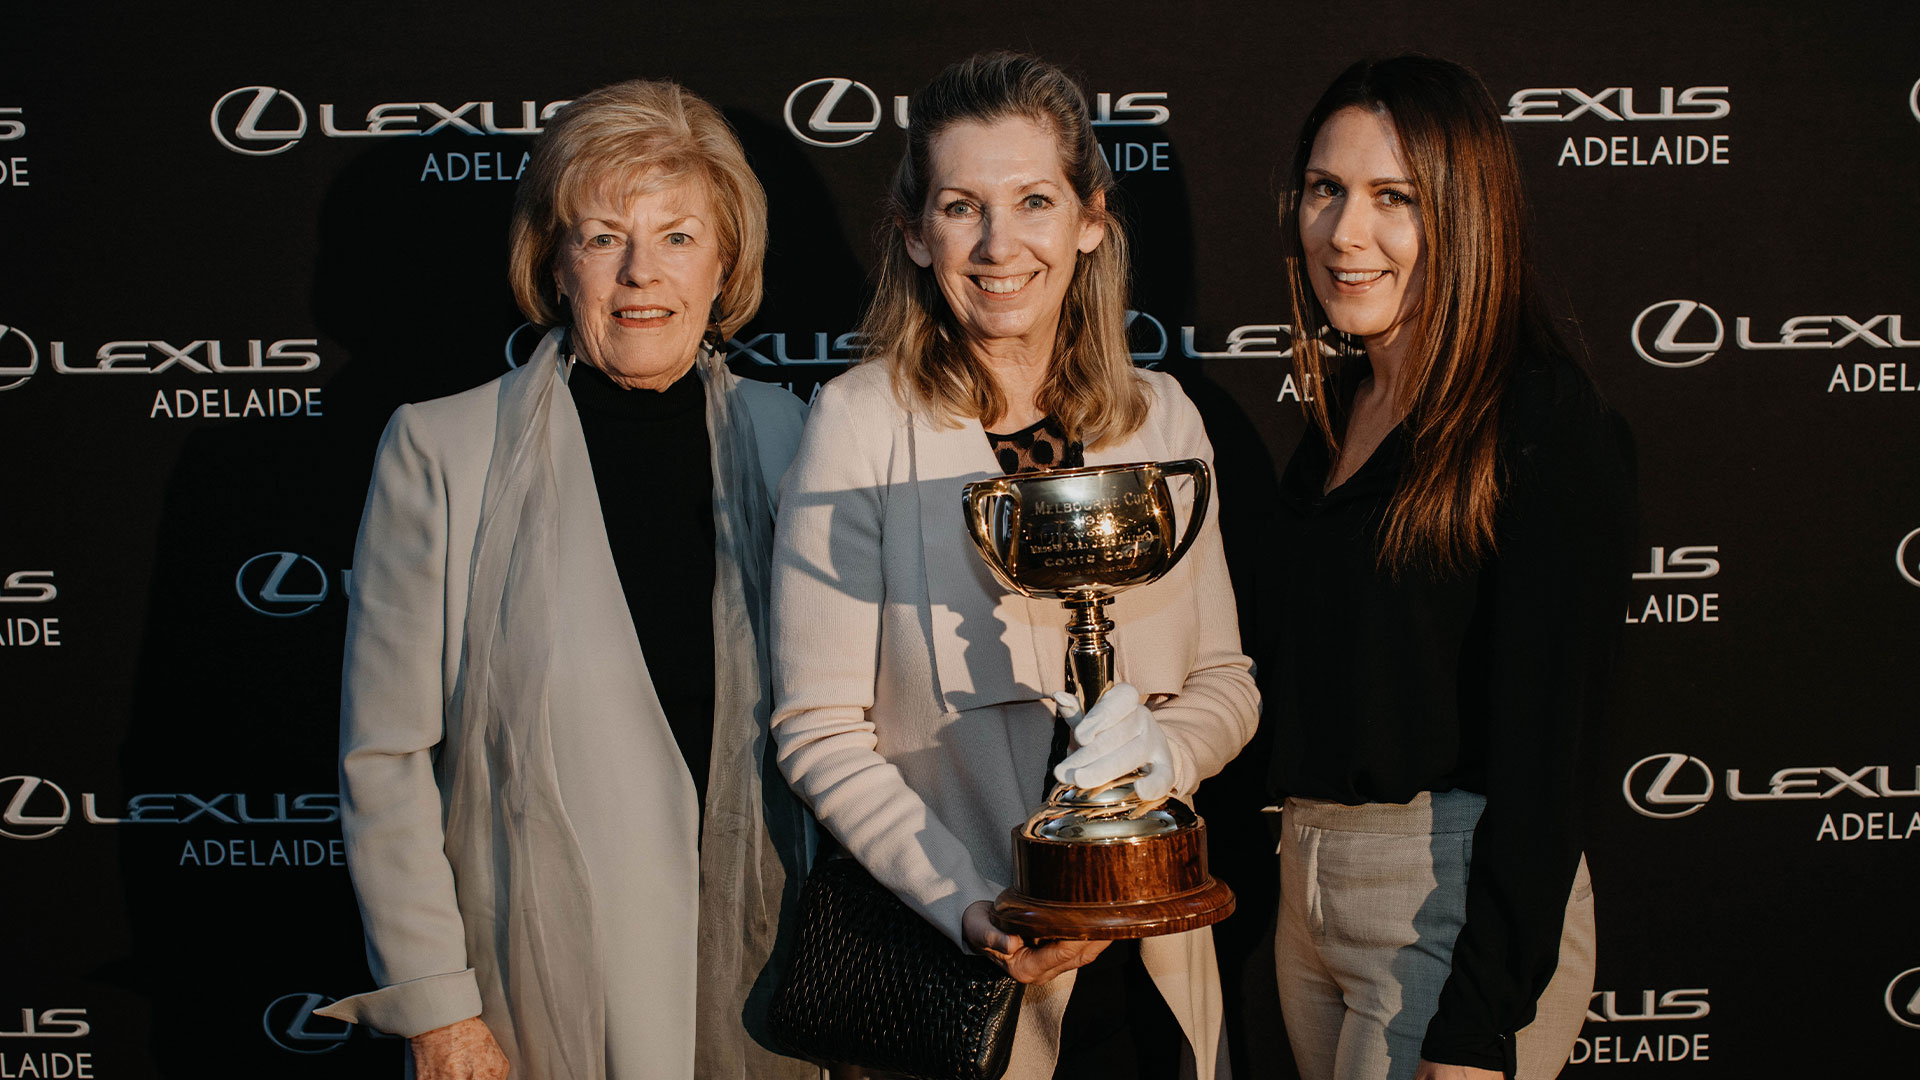 Lexus Melbourne Cup Tour 2021